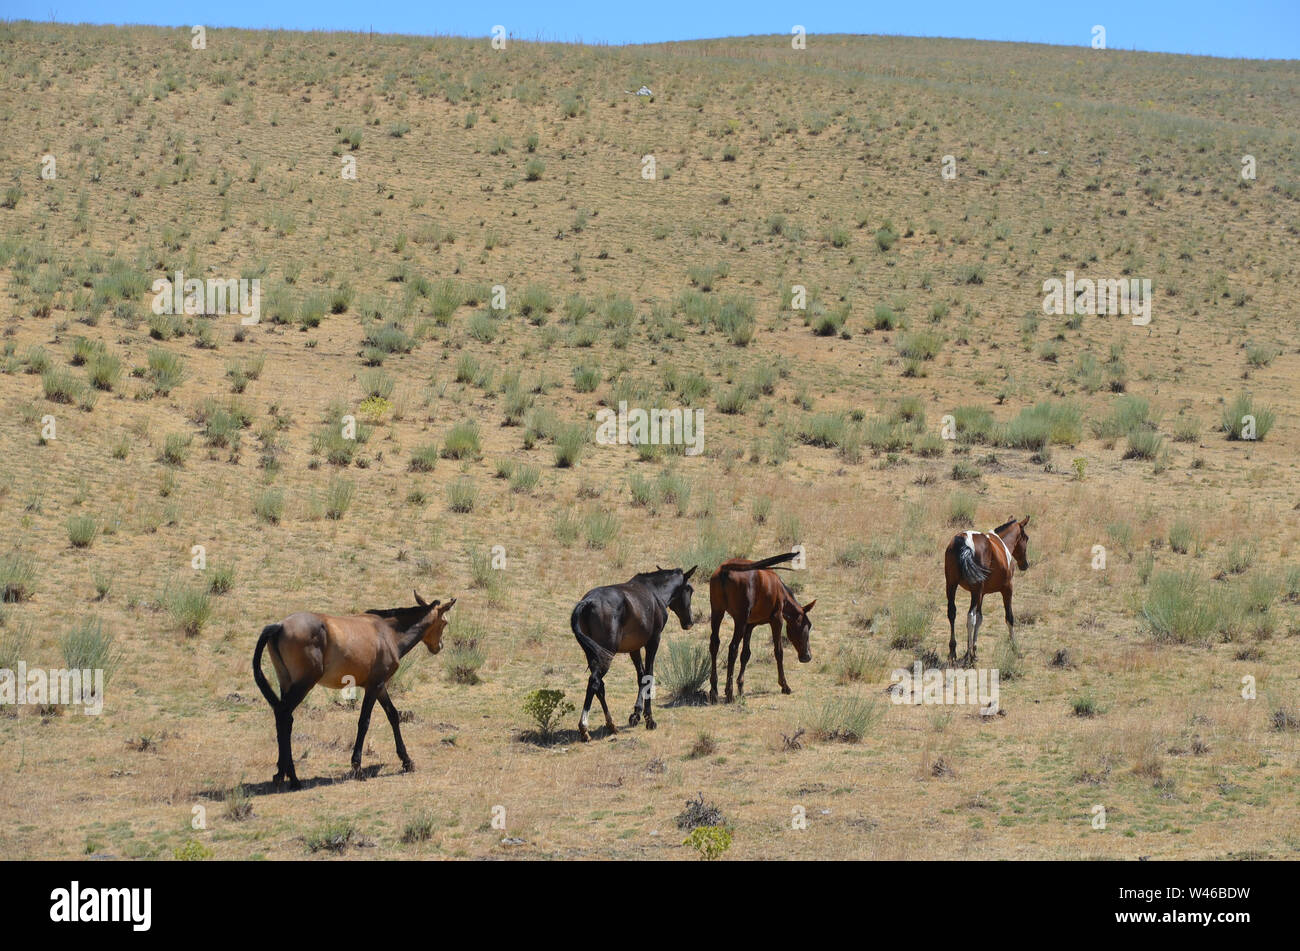 Wilde Pferde in einer Hochebene von Nuratau-Kyzylkum Biosphärenreservat, zentrale Usbekistan Stockfoto